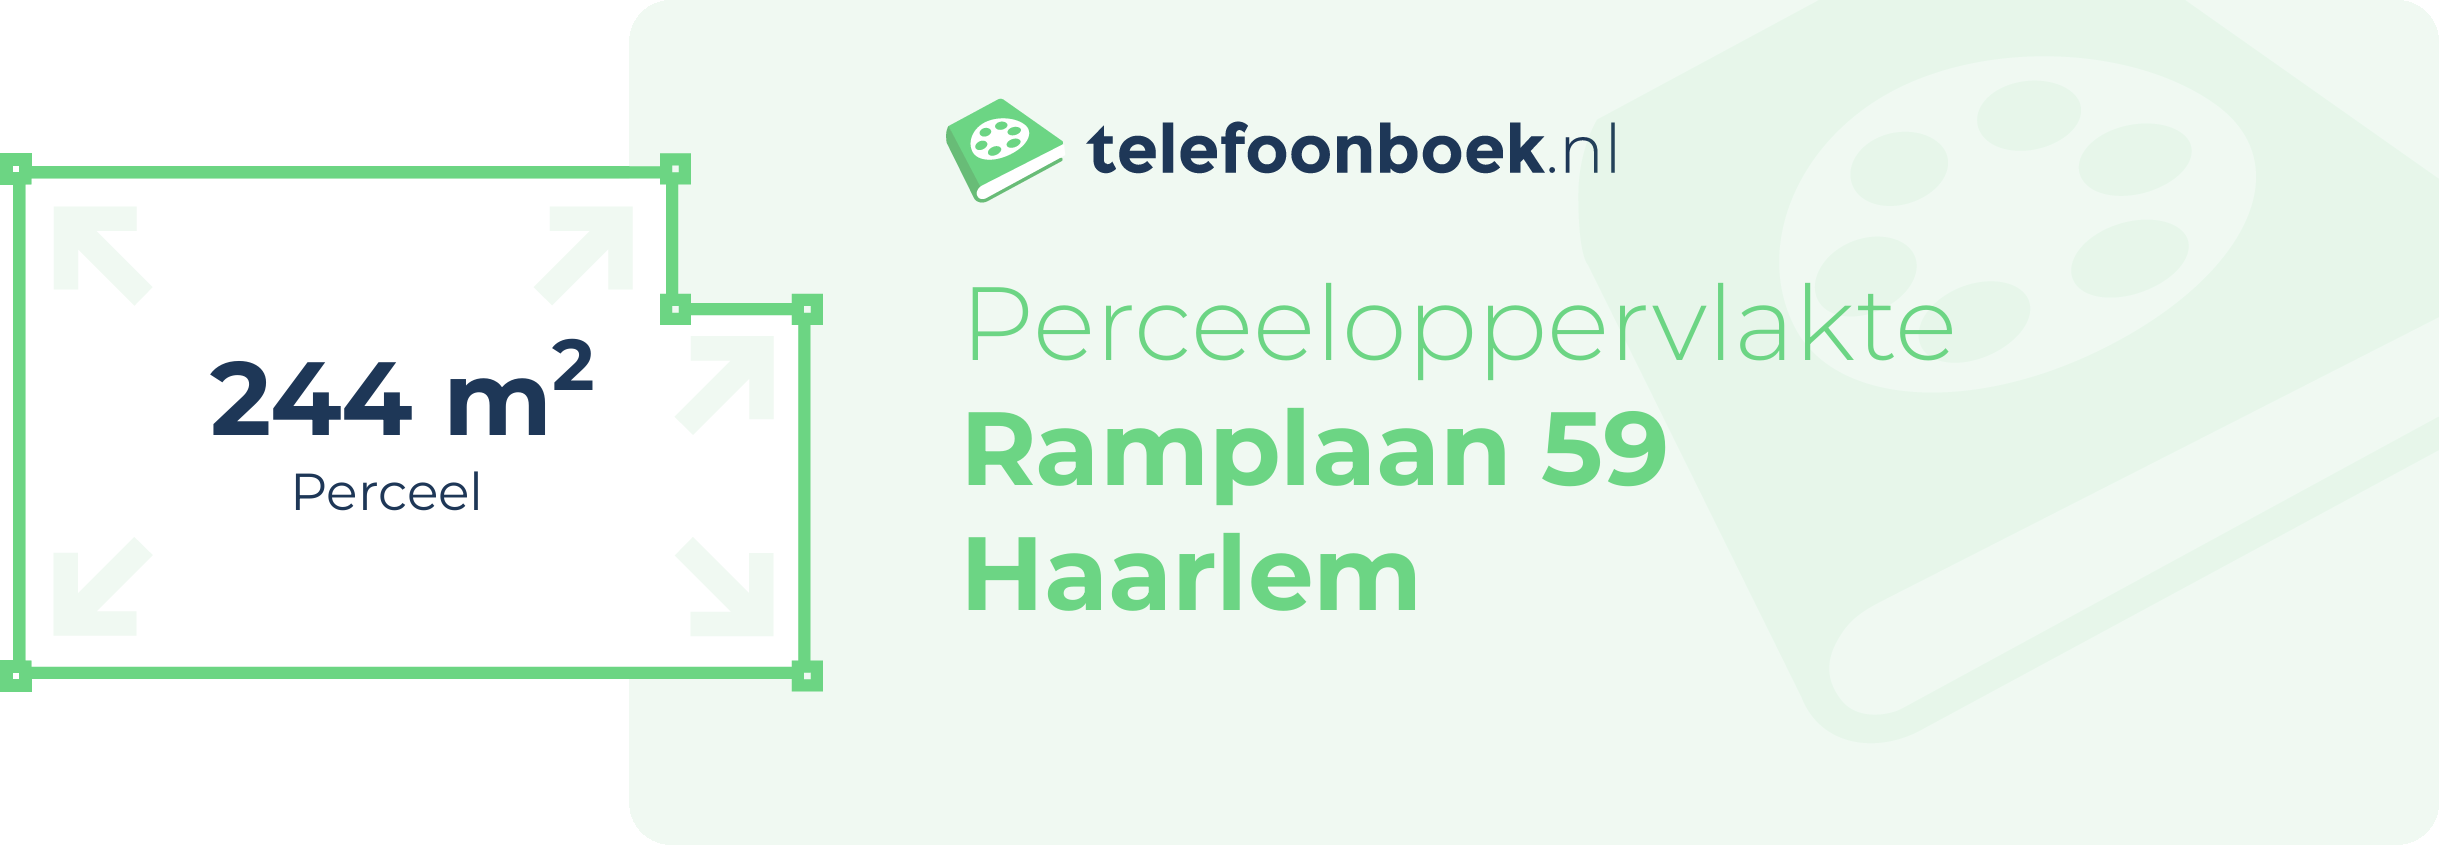 Perceeloppervlakte Ramplaan 59 Haarlem